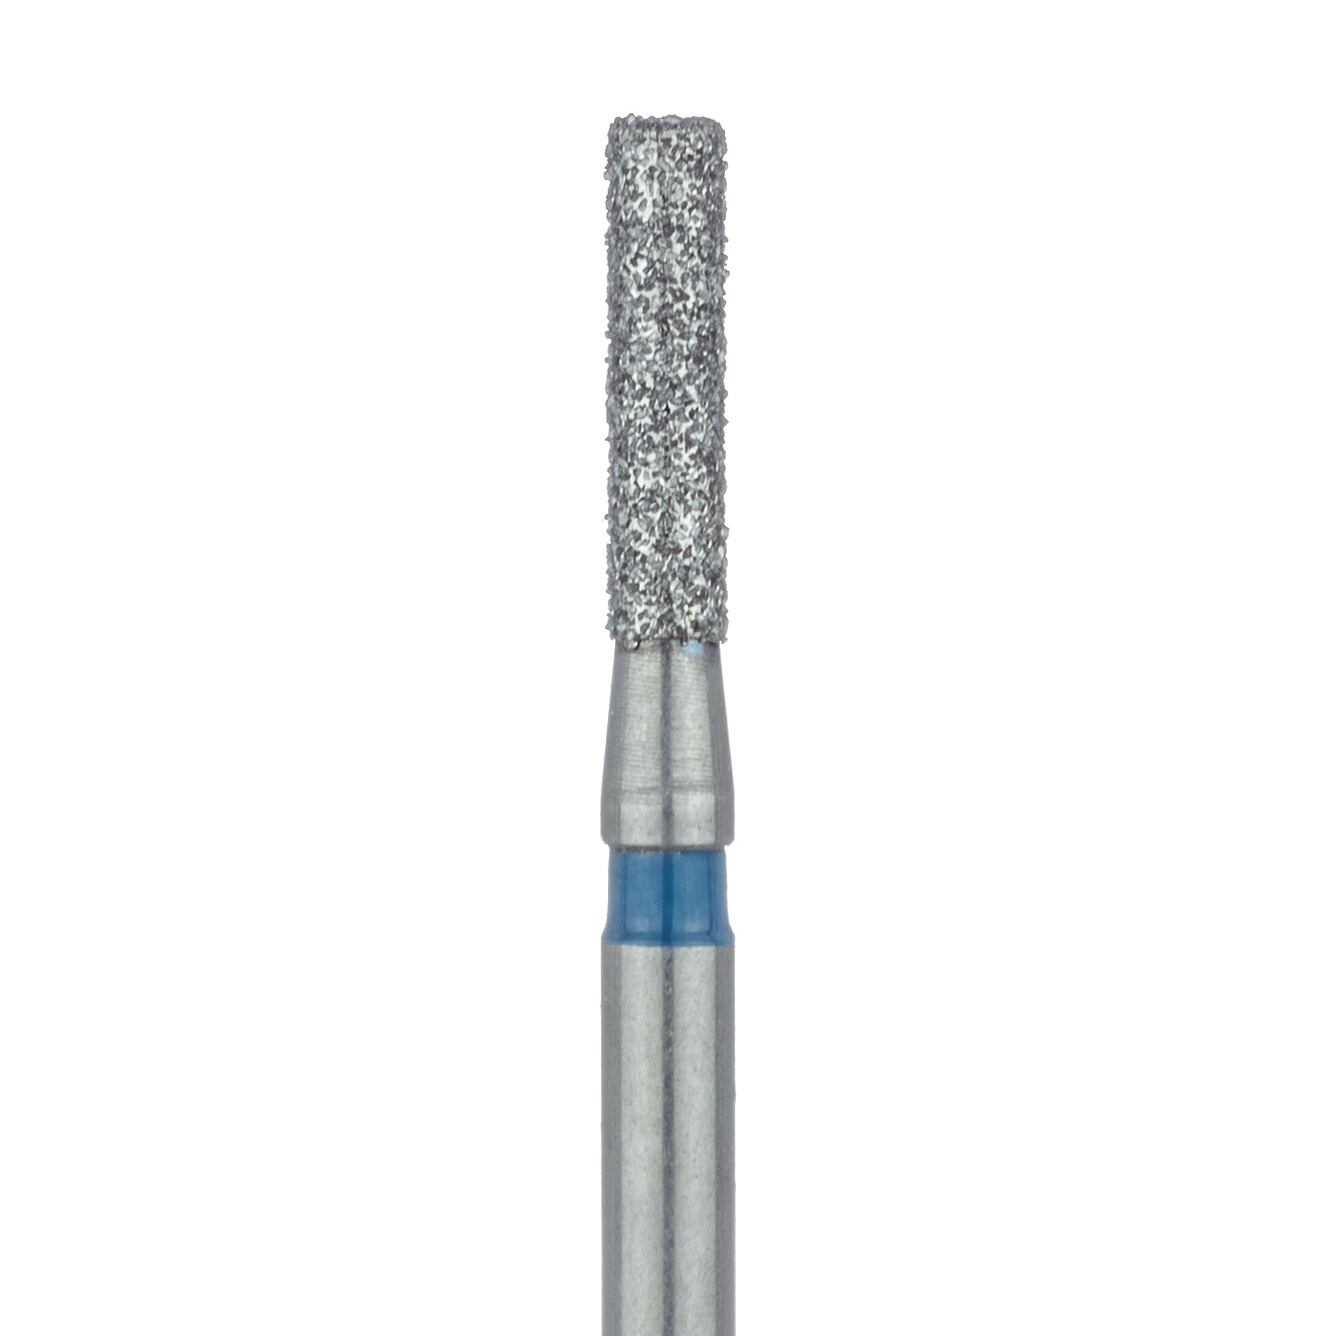 837-014-FG Long Cylinder Diamond Bur, 1.4mm Ø, Medium, FG